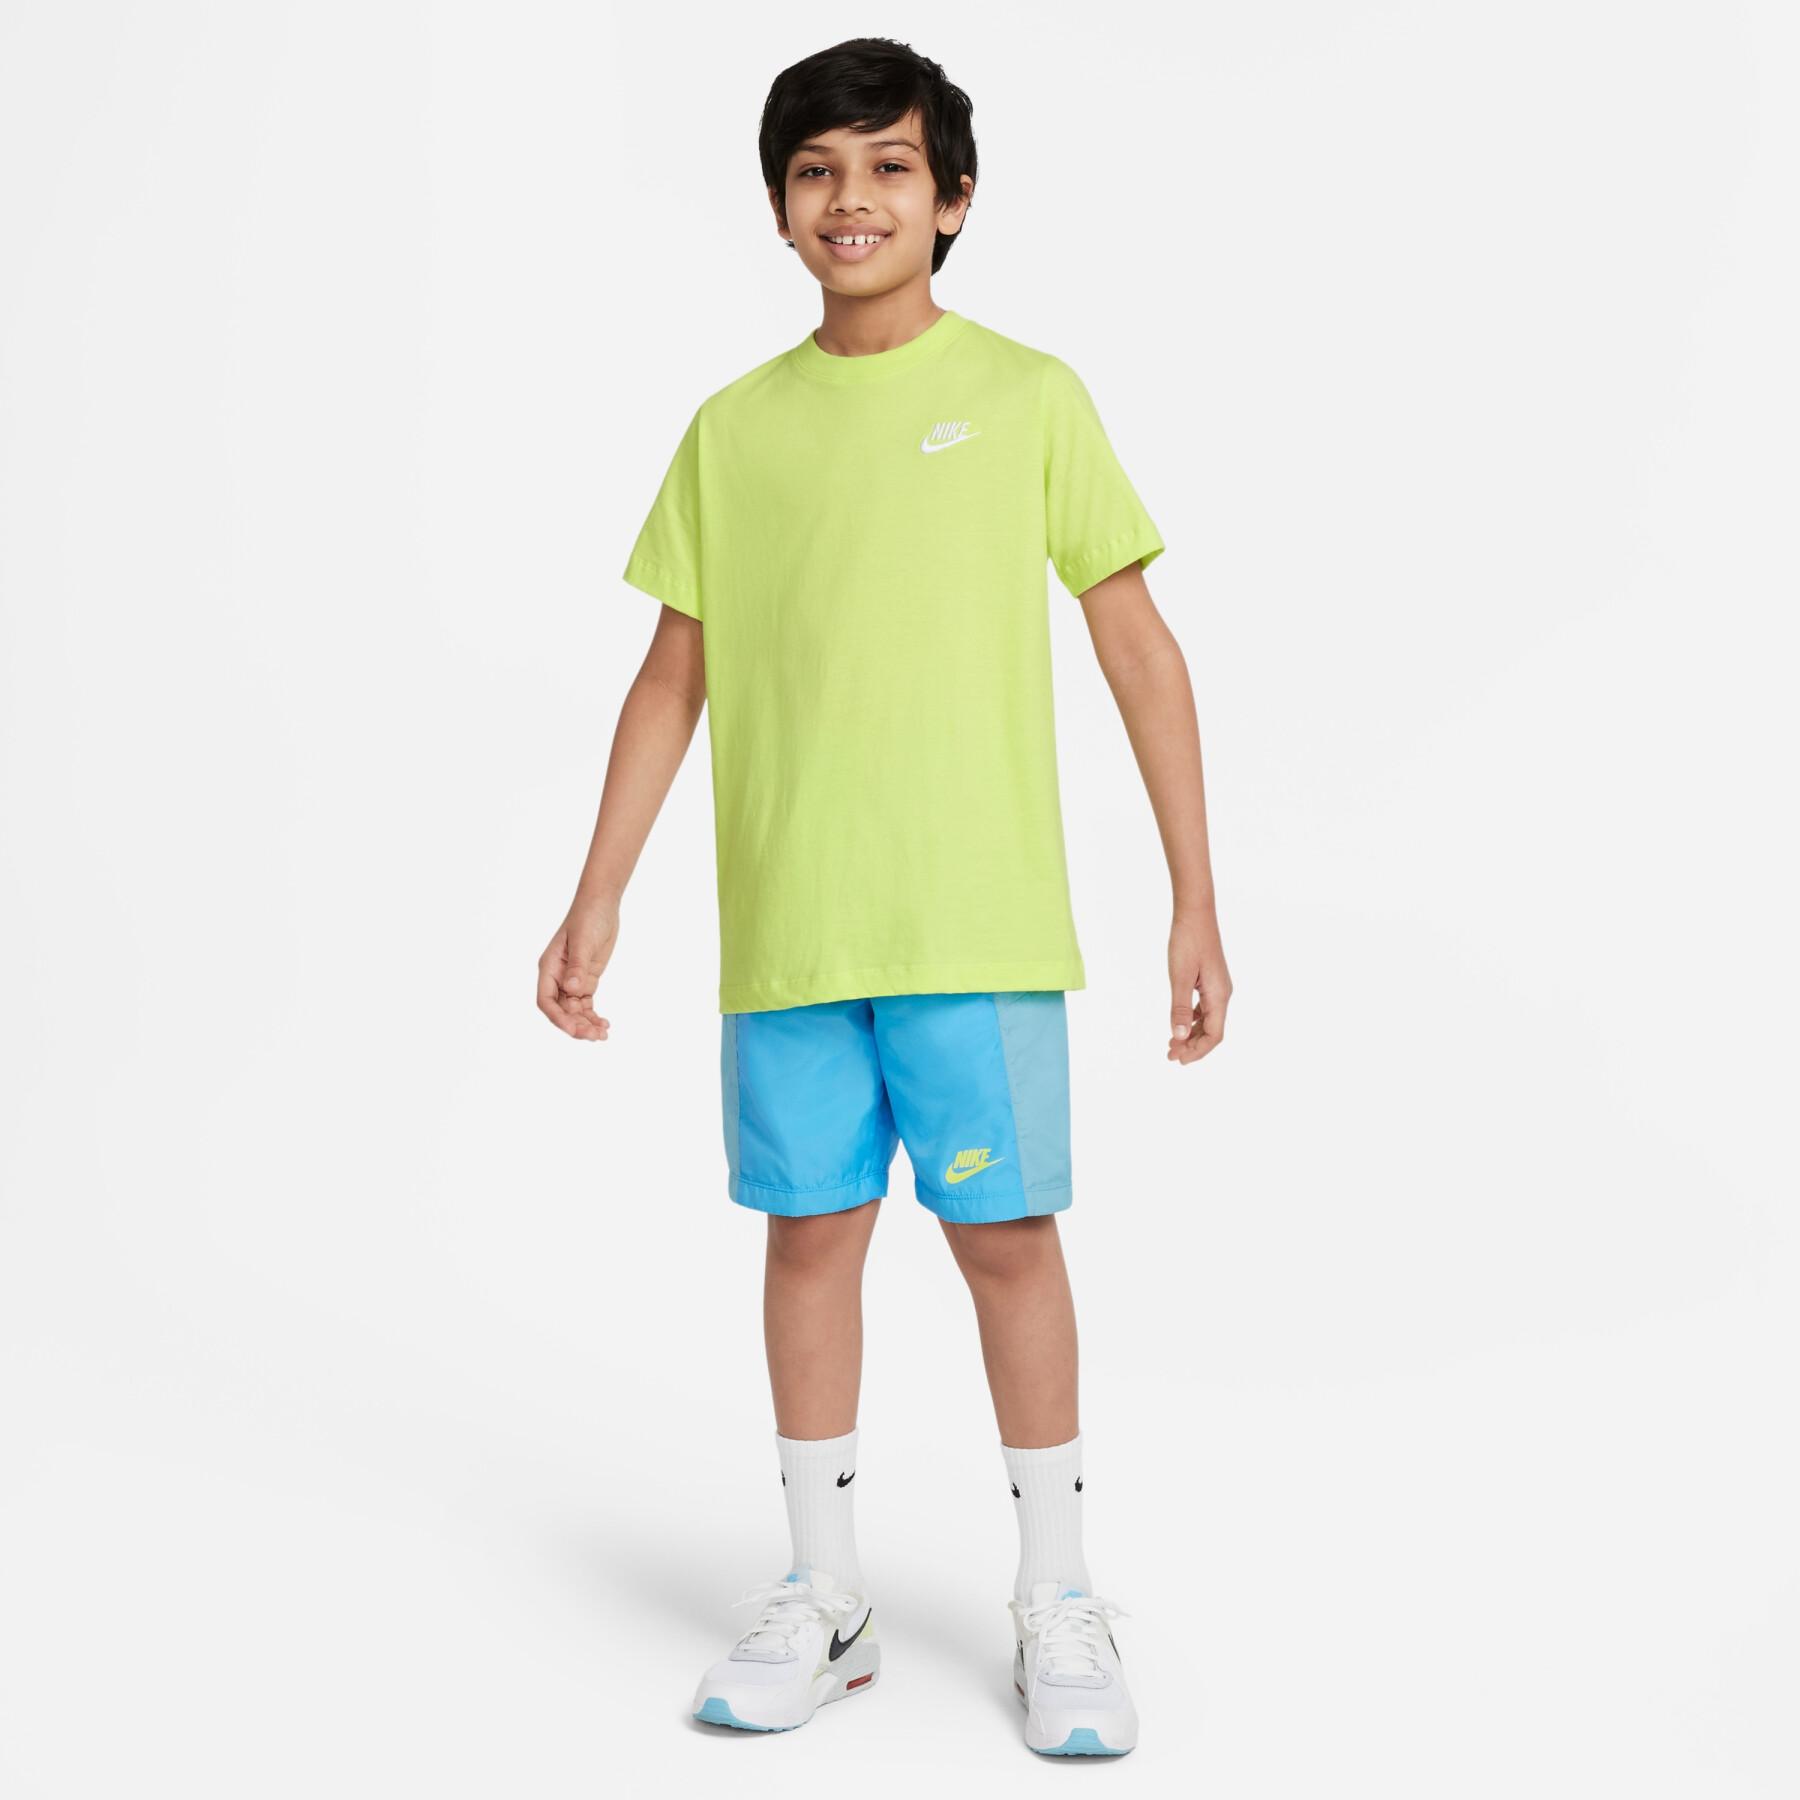 Kinder shorts Nike Amplify